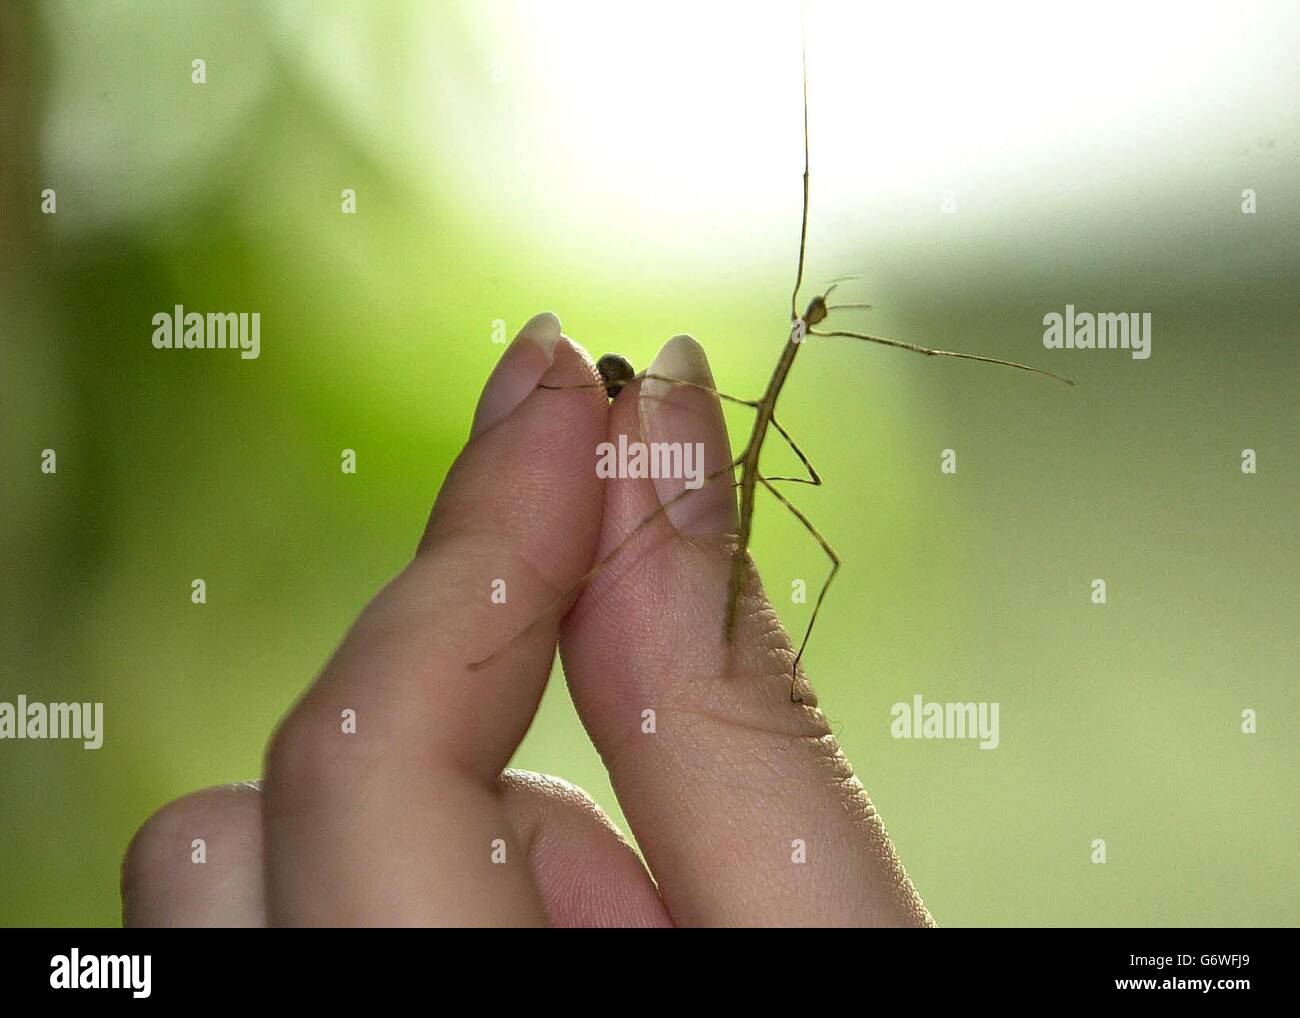 Ein malaysisches Baby-Riesenstäbchen-Insekt mit einer Länge von 60 mm und dem 4-mm-Ei, aus dem es geschlüpft ist, wird im Londoner Zoo enthüllt. Das Insekt, das vom Zoopersonal „Twiggy“ genannt wird, wird voraussichtlich in sechs Monaten bis zu 555 mm (22 Zoll) heranwachsen, wenn sie reif wird. Twiggy ist eines von zwanzig Riesenstäbchen-Insekten, die bisher aus einer Charge des Rotterdamer Zoos geschlüpft sind und Teil einer neuen Zuchtgruppe werden, die im Biodiversitätszentrum des Zoos ausgestellt wird. Stockfoto